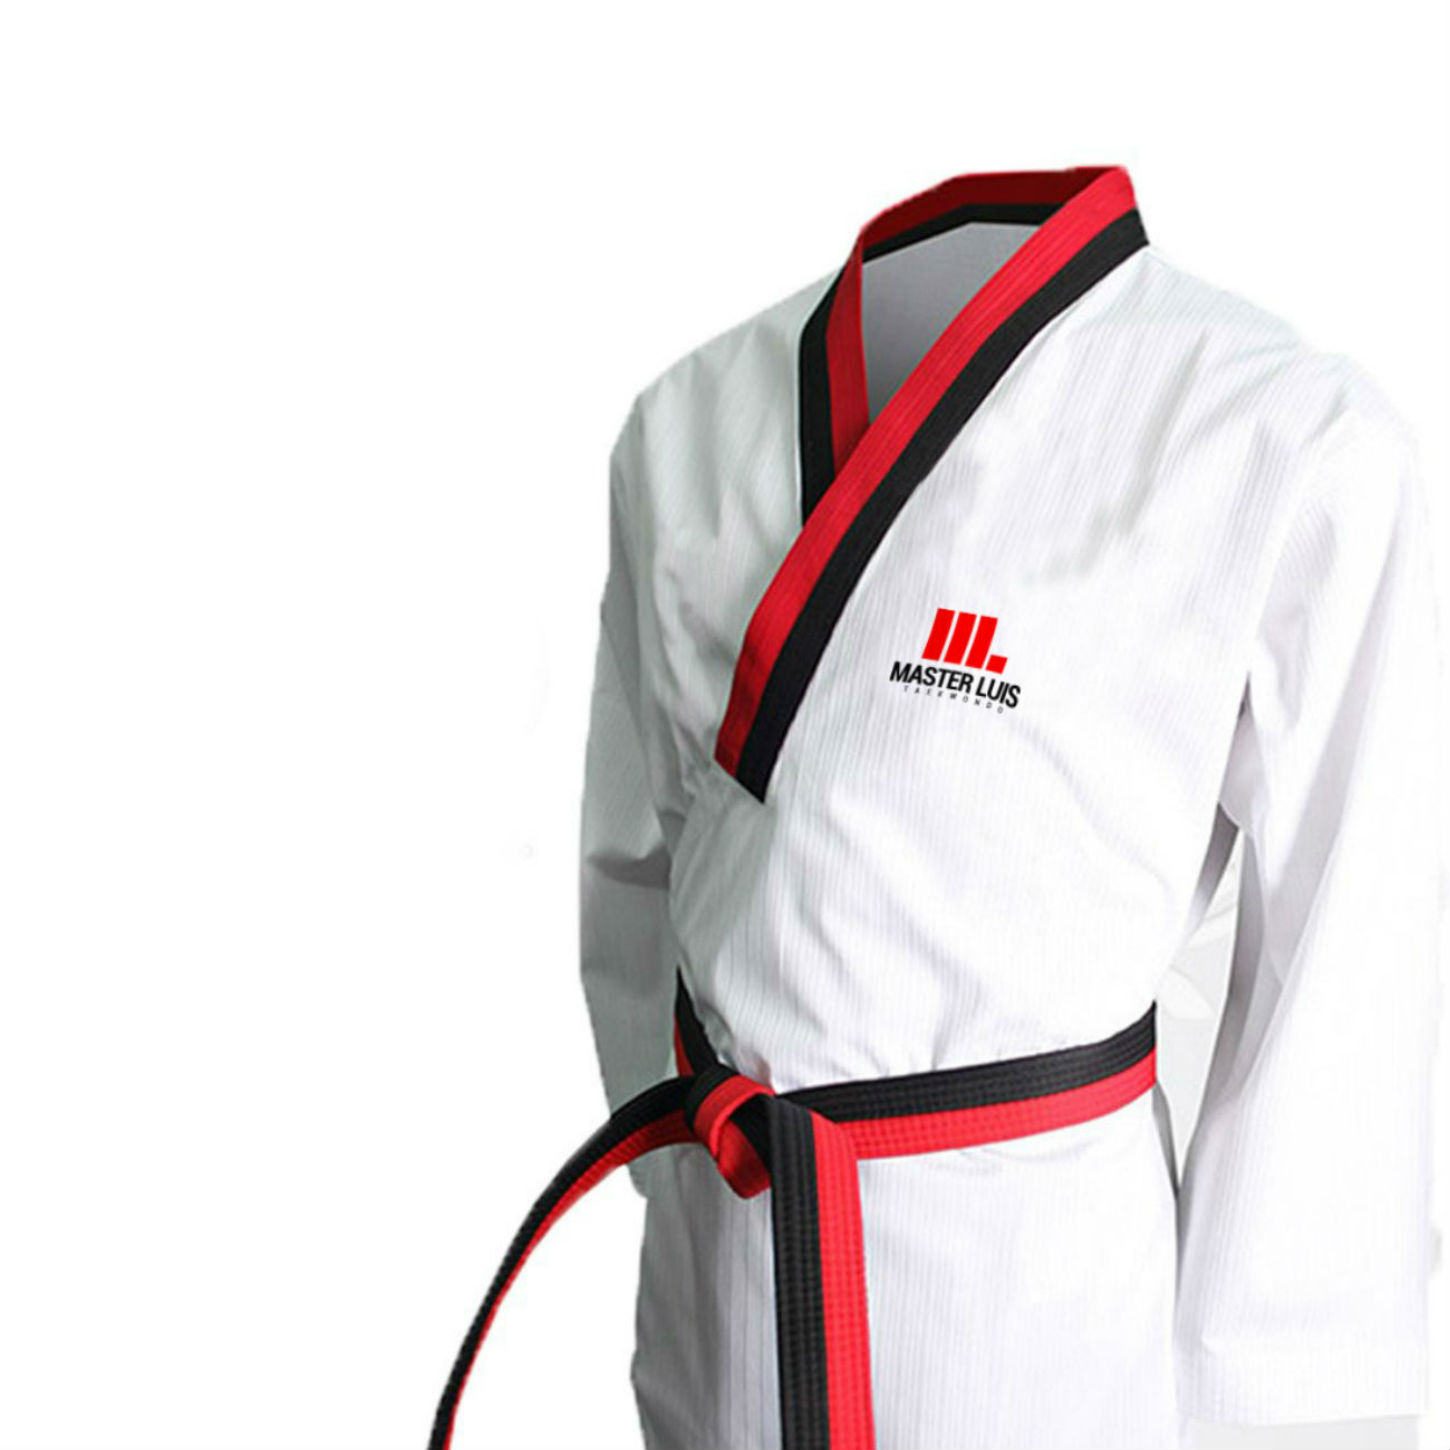 Diseño de Marca Master Luis Taekwondo